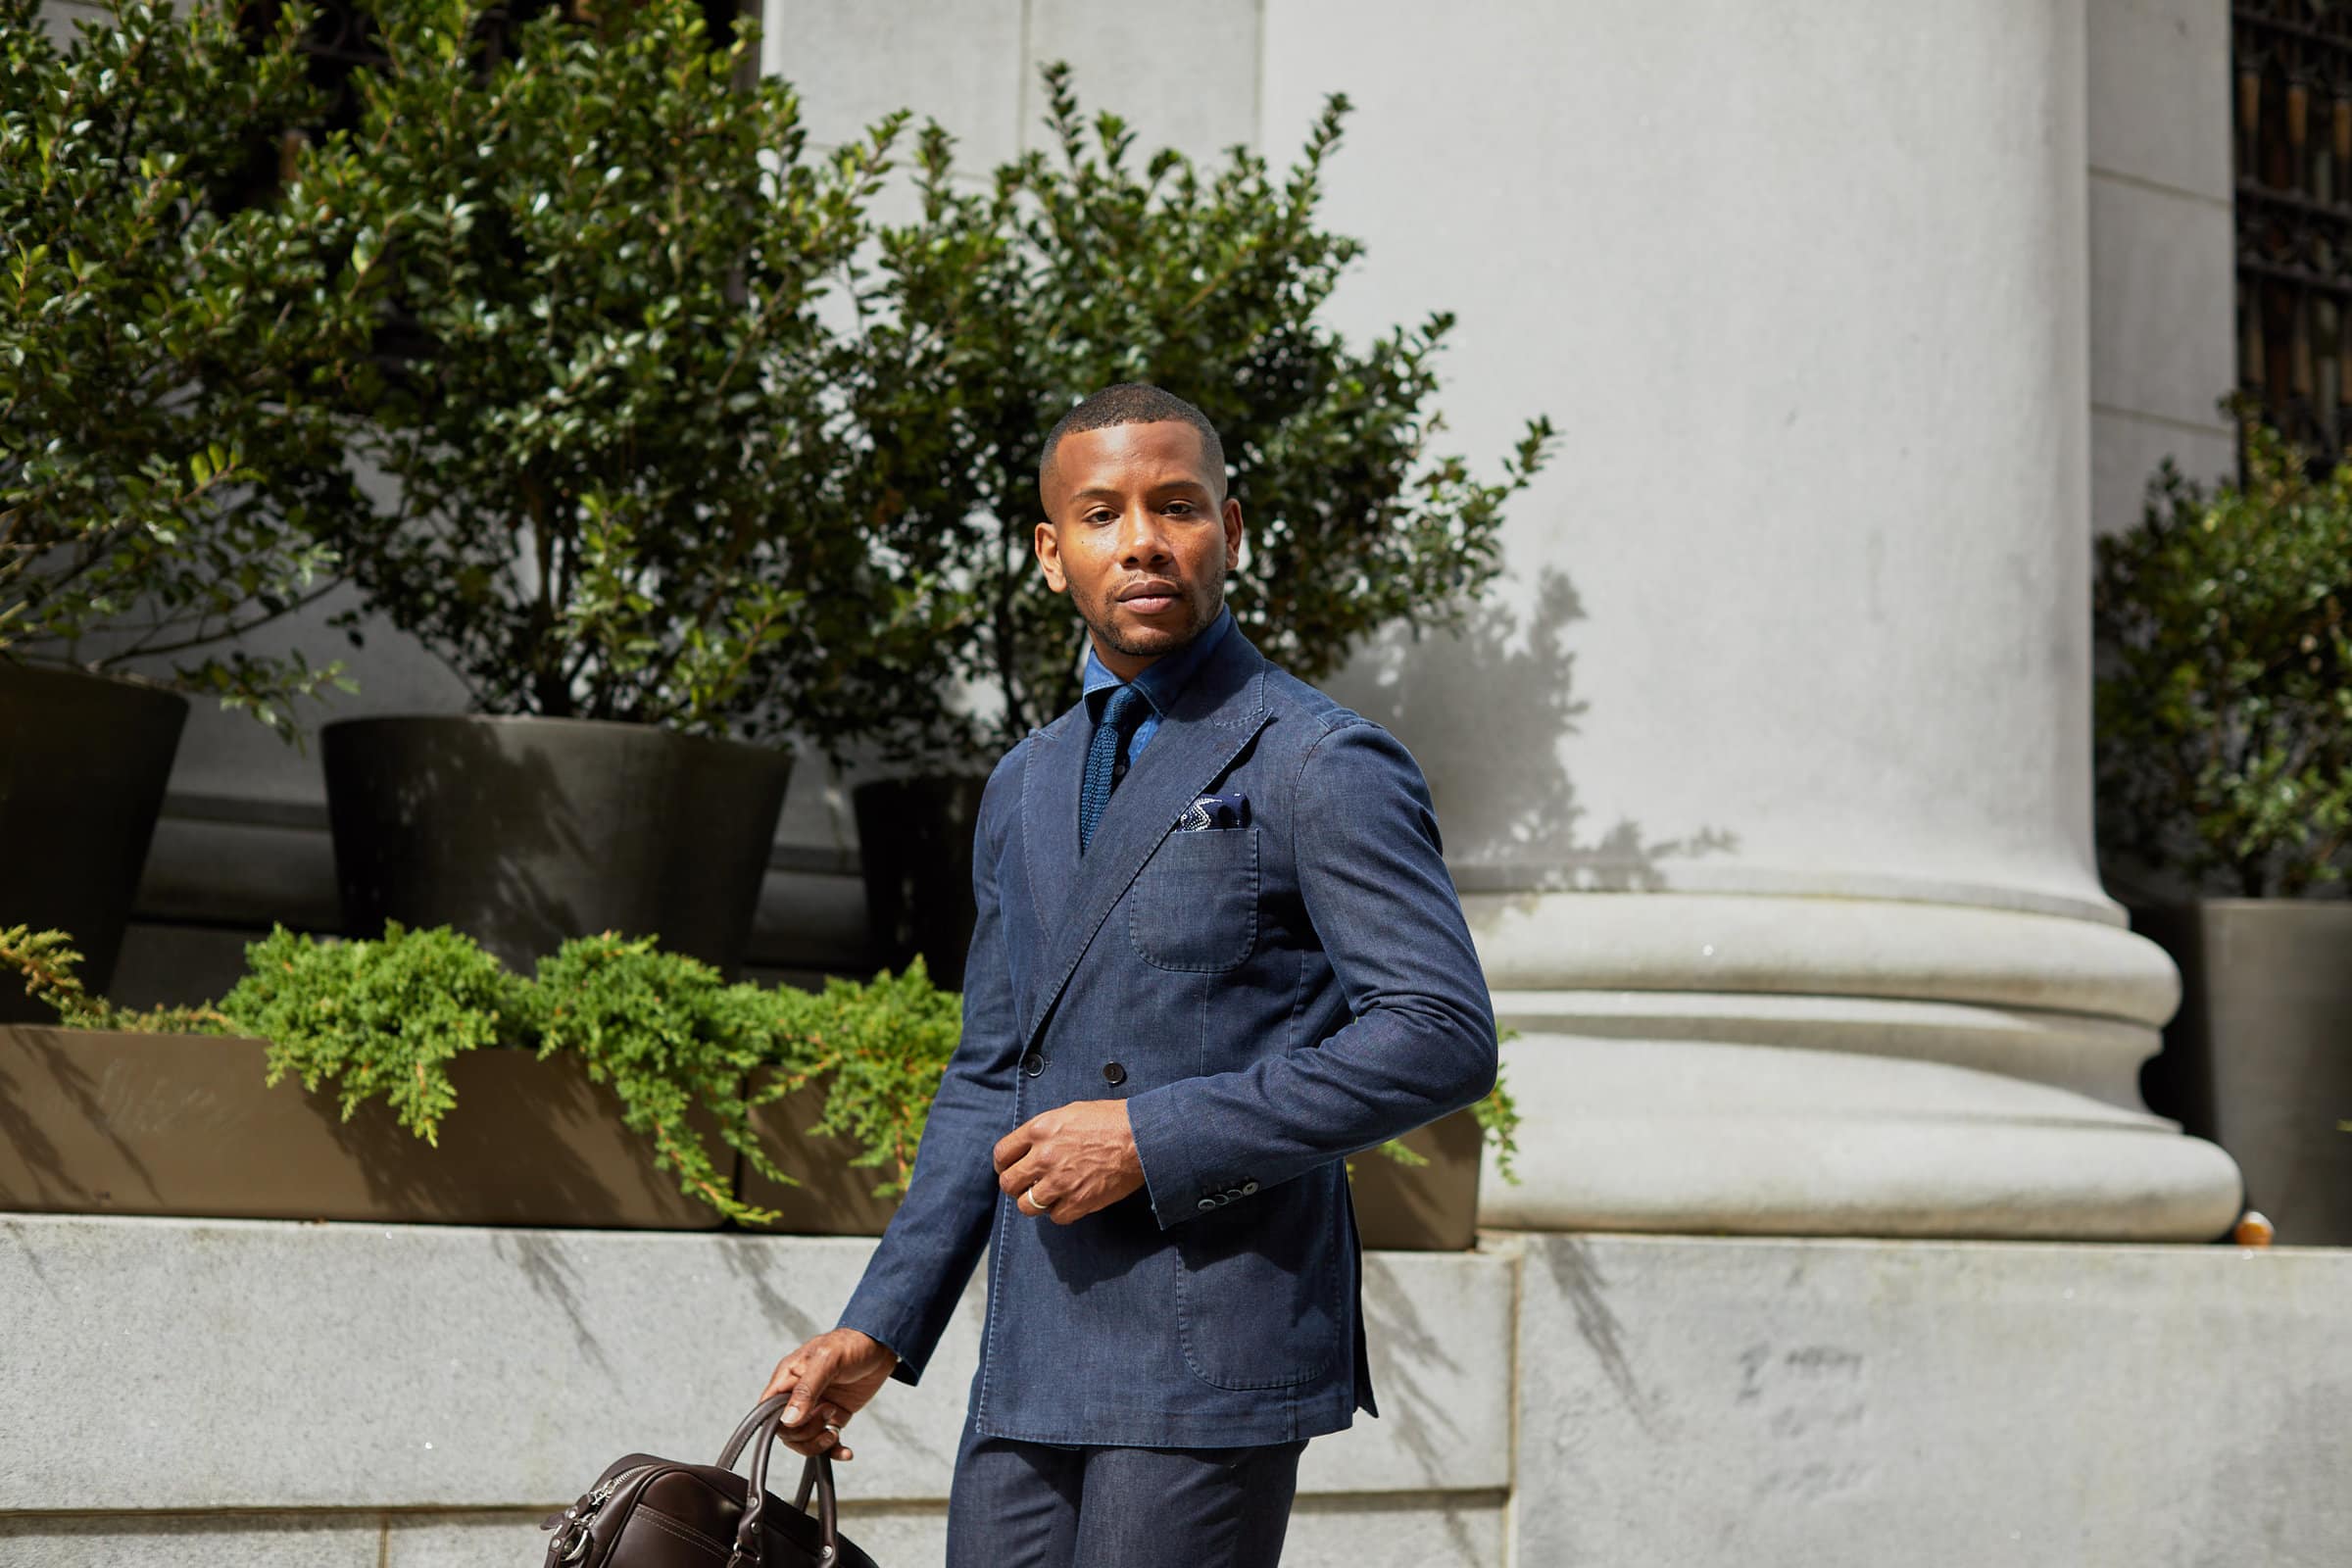 ModaMatters Denim Suit on Men's Style Pro